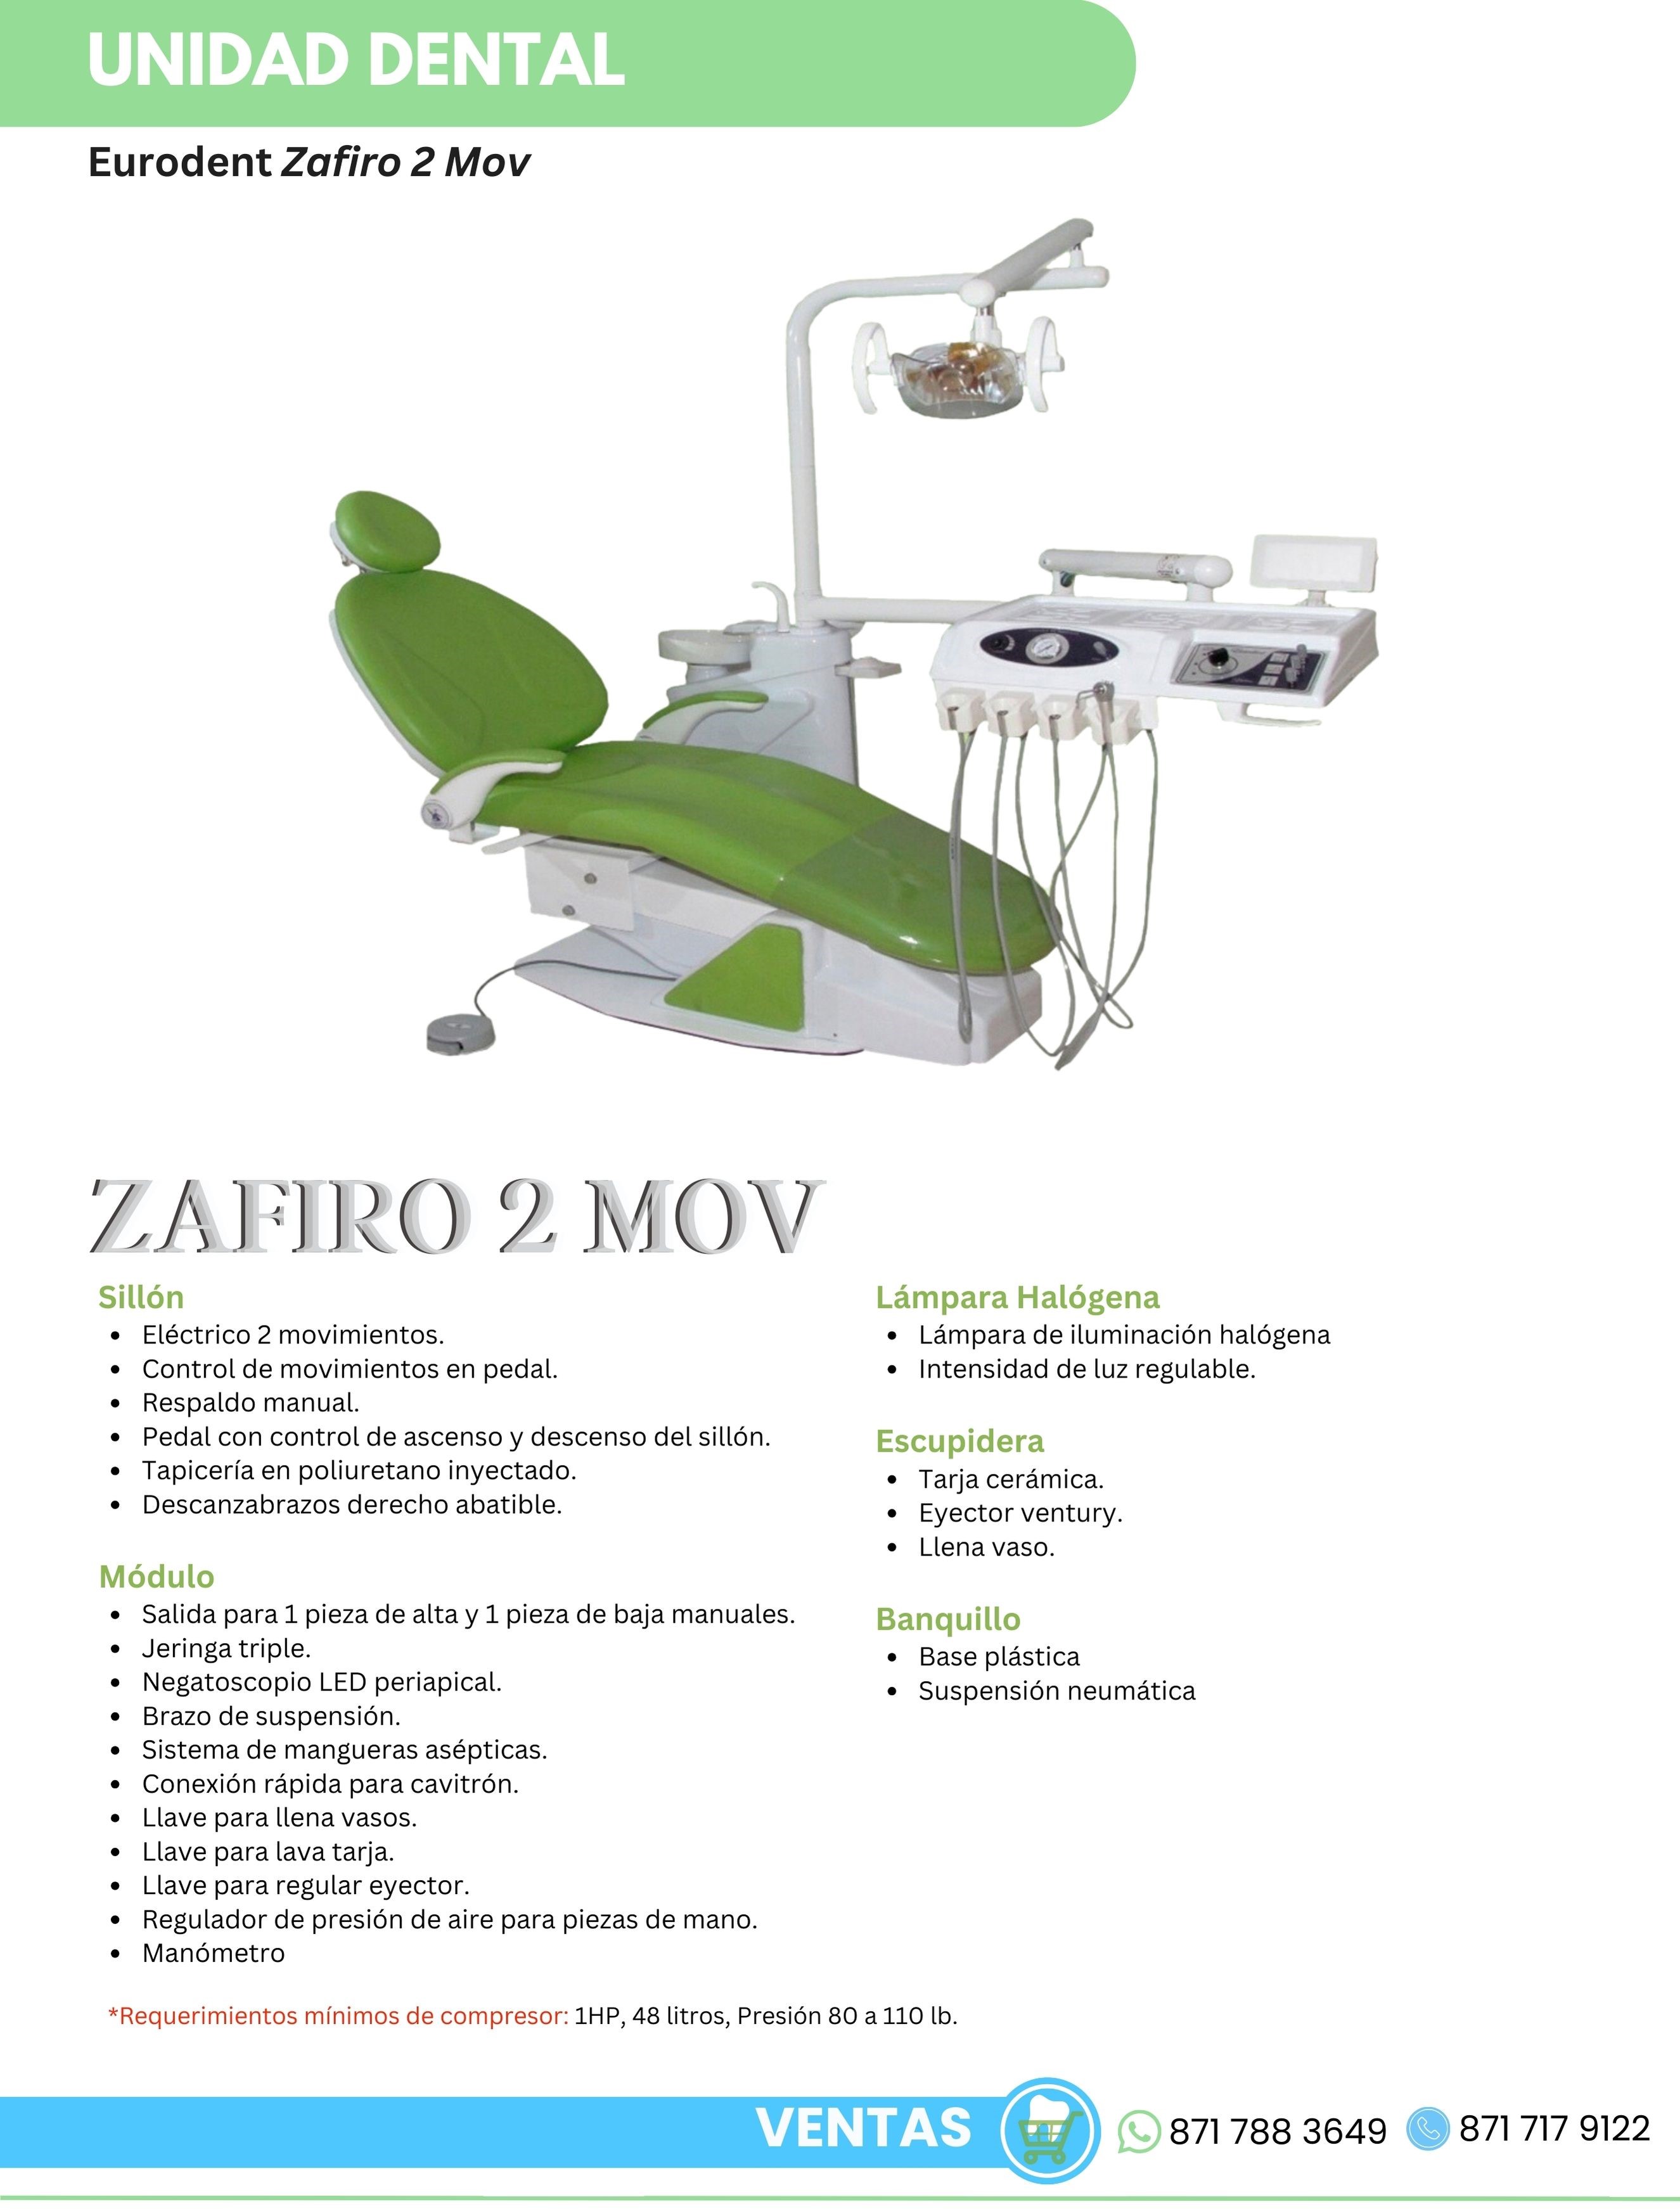 Catálogo Unidad Dental Zafiro 2 Mov Eurodent Orthosign 